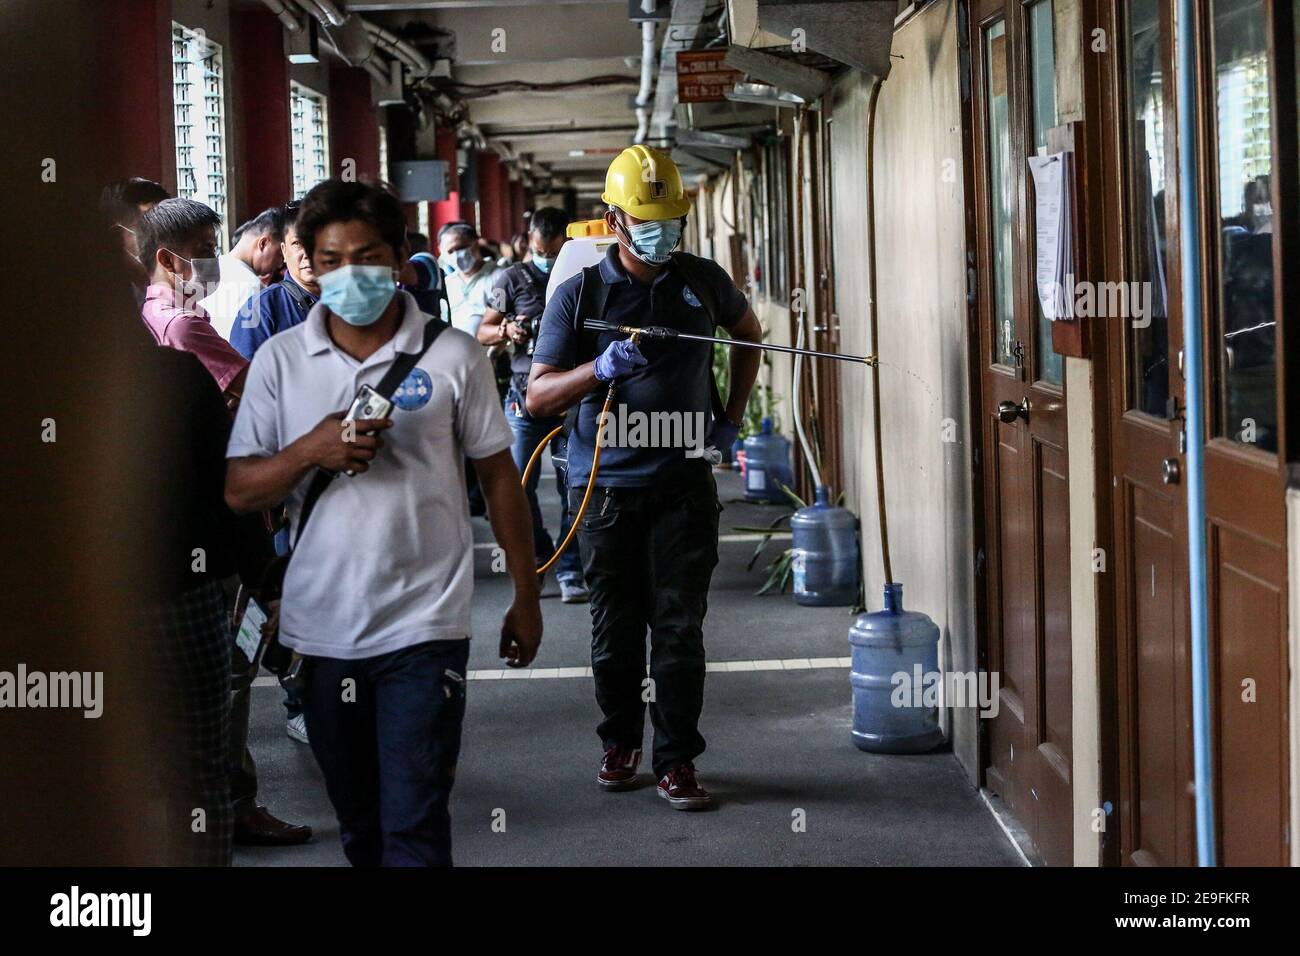 Ein Arbeiter sprüht Desinfektionslösung im regierungsgebäude, um die Ausbreitung des Coronavirus zu beschneiden. Manila, Philippinen. Stockfoto